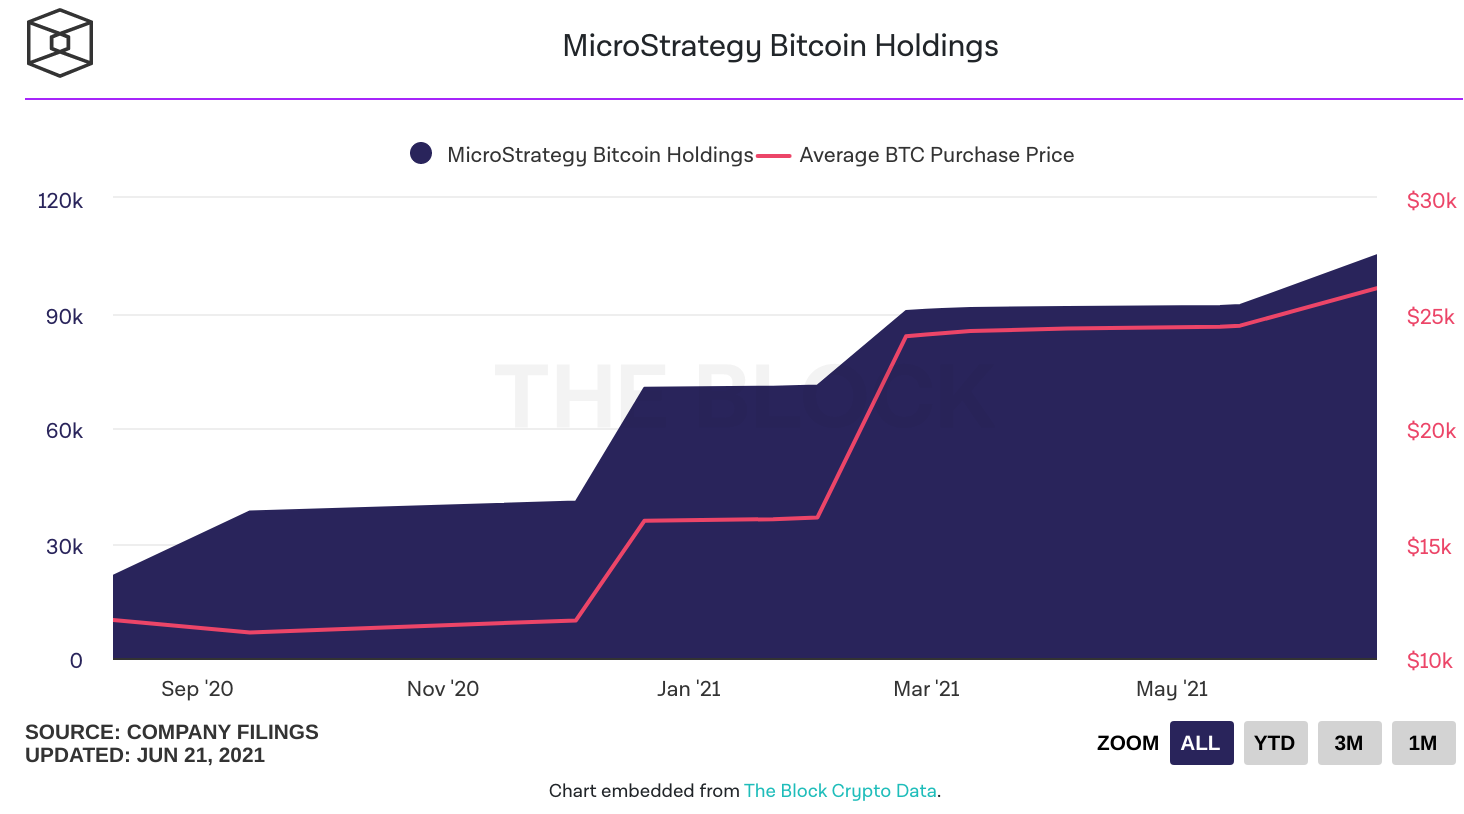 Quantité de bitcoins aux mains de MicroStrategy - Source : The Block